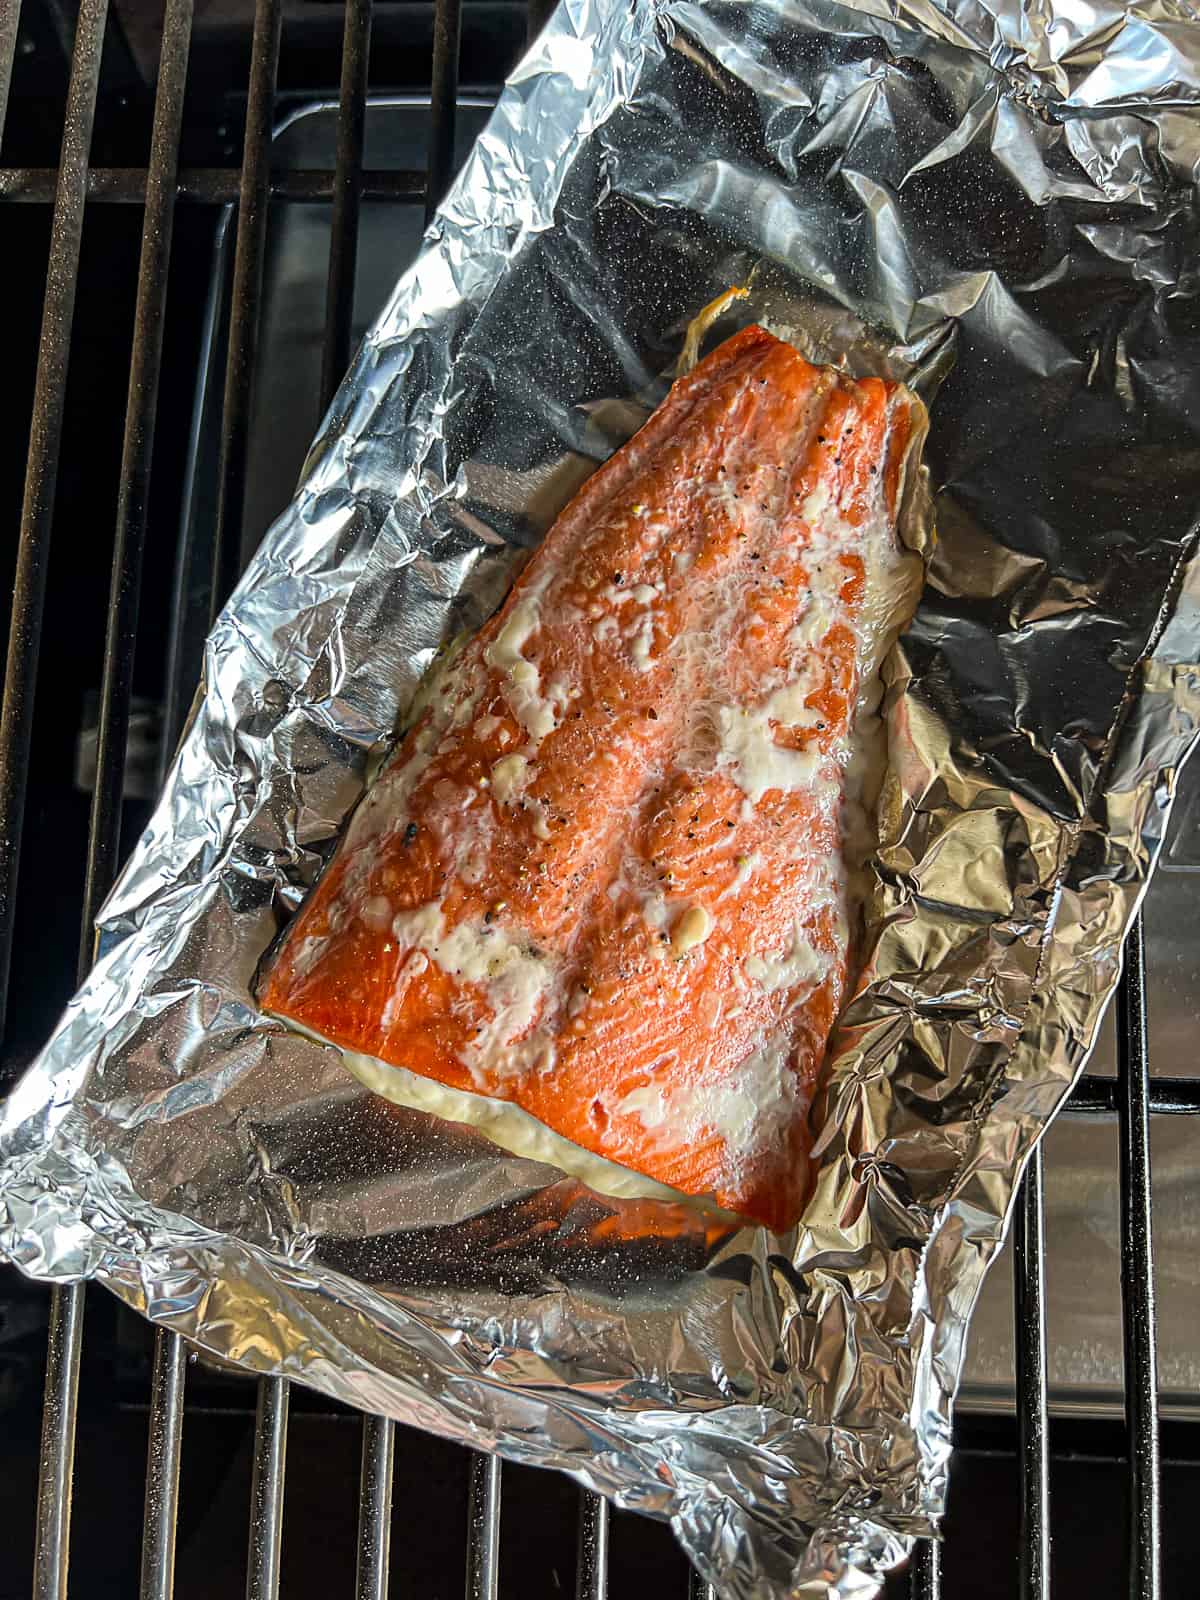 Smoking salmon filet with white stuff on Traeger grills